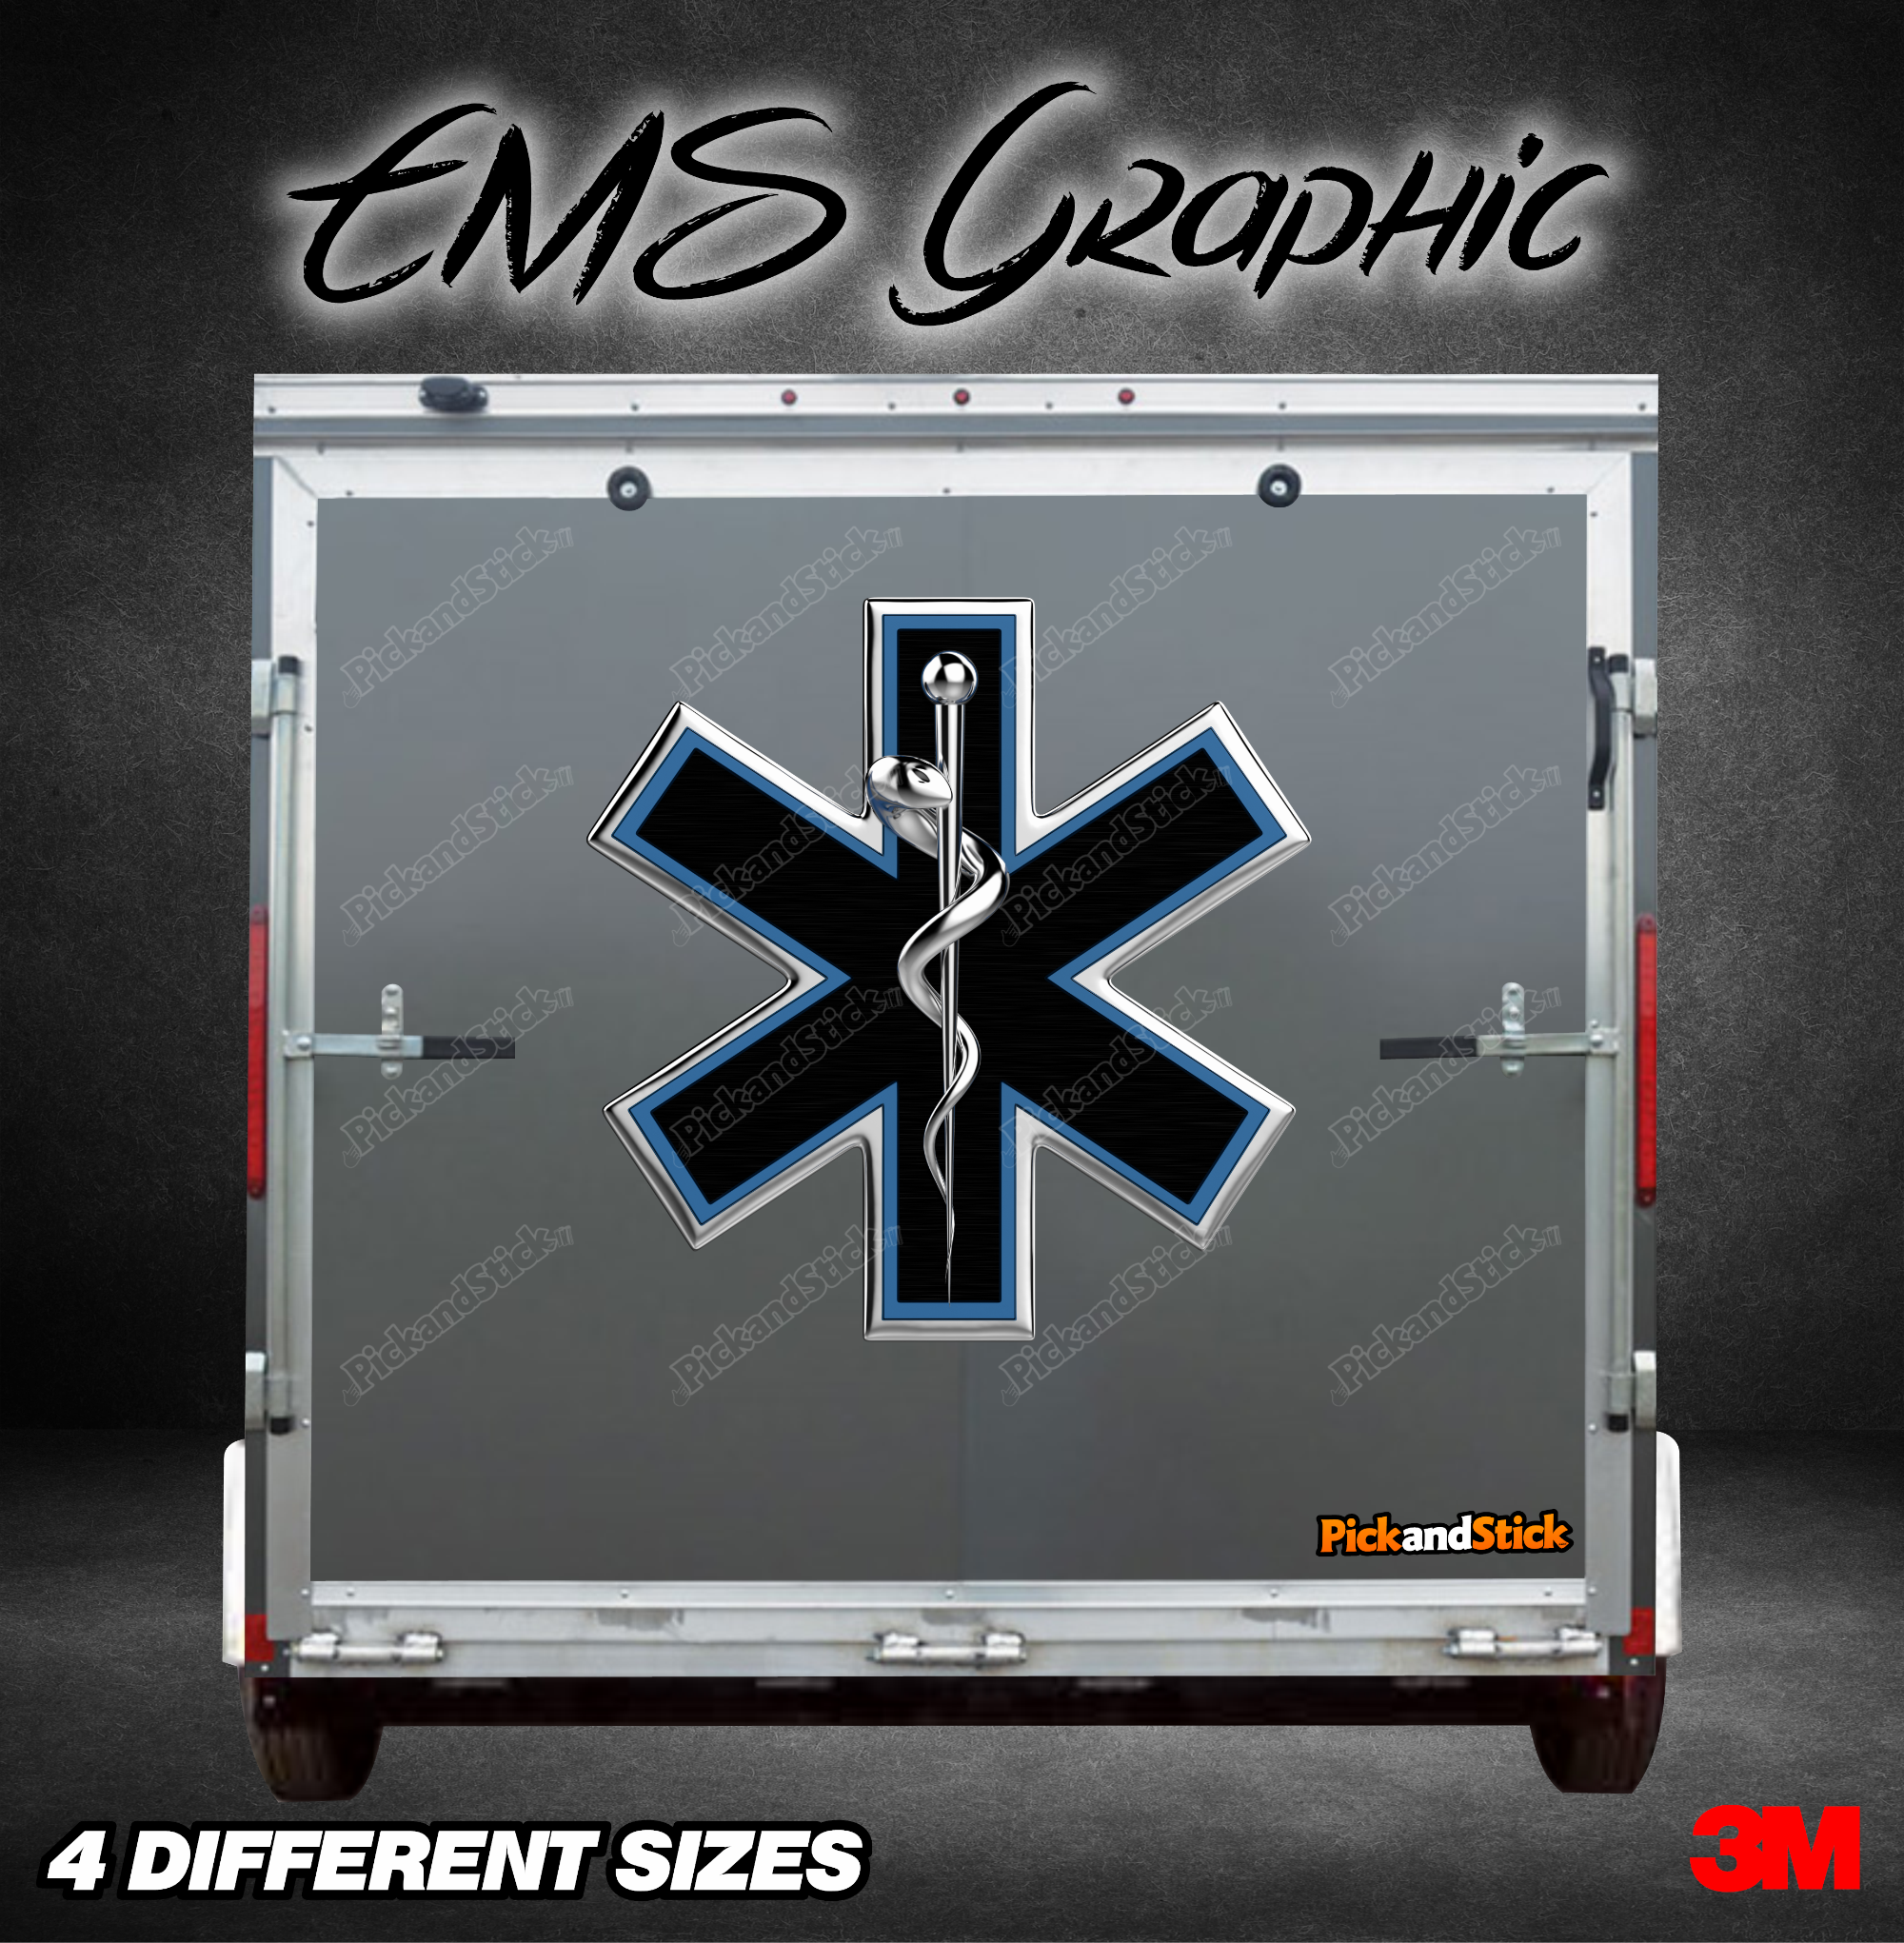 EMS Trailer Graphic - PickandStickcom